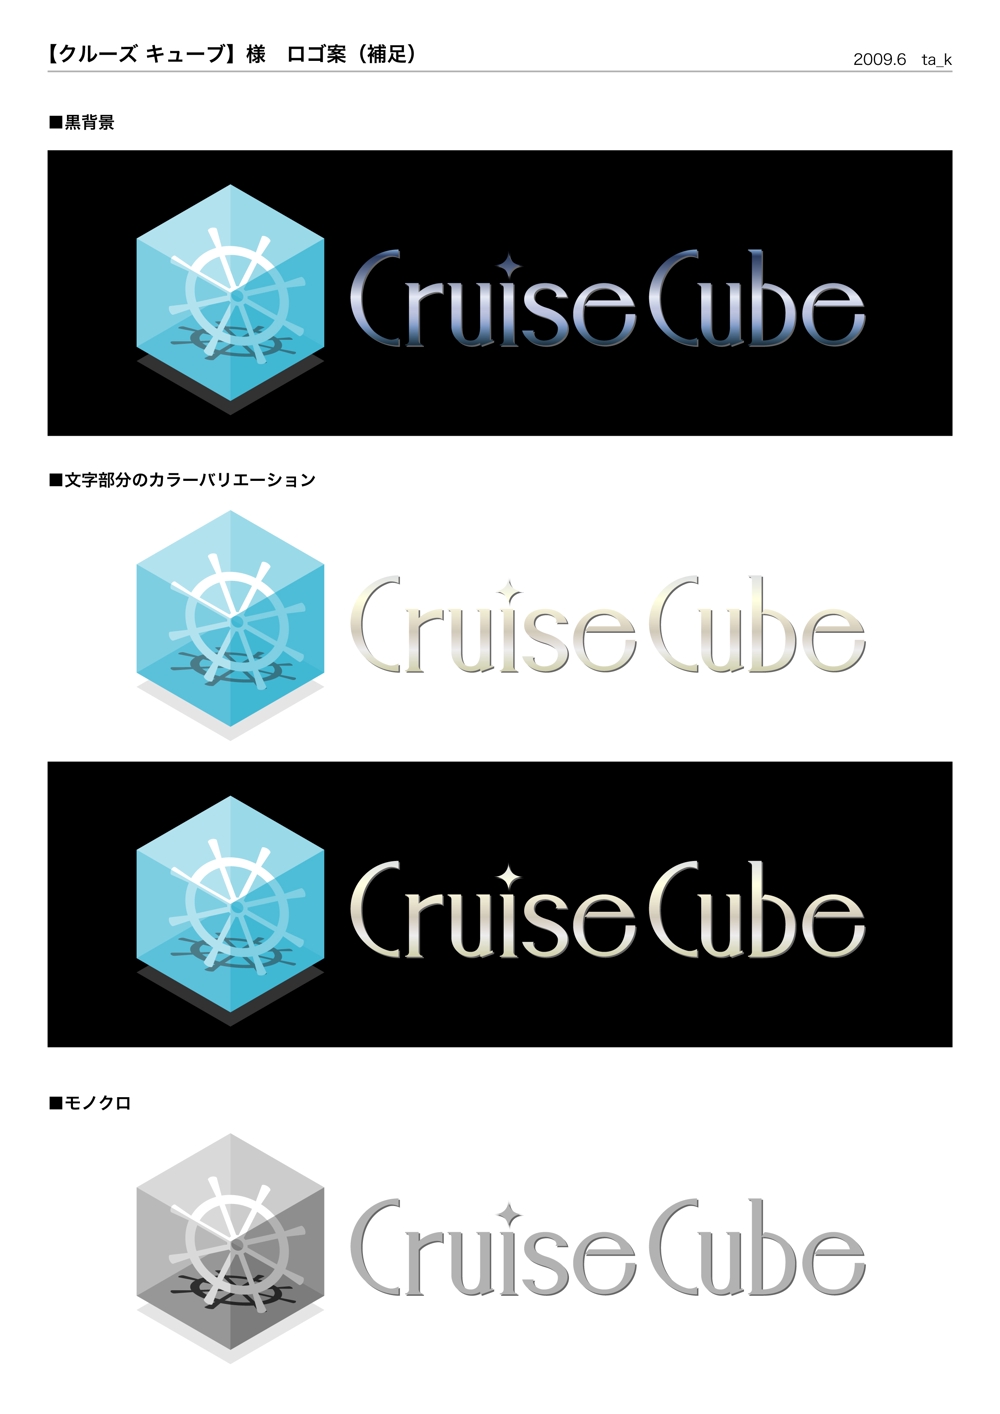 「クルーズ」に関連するWEBポータルサイトのロゴ